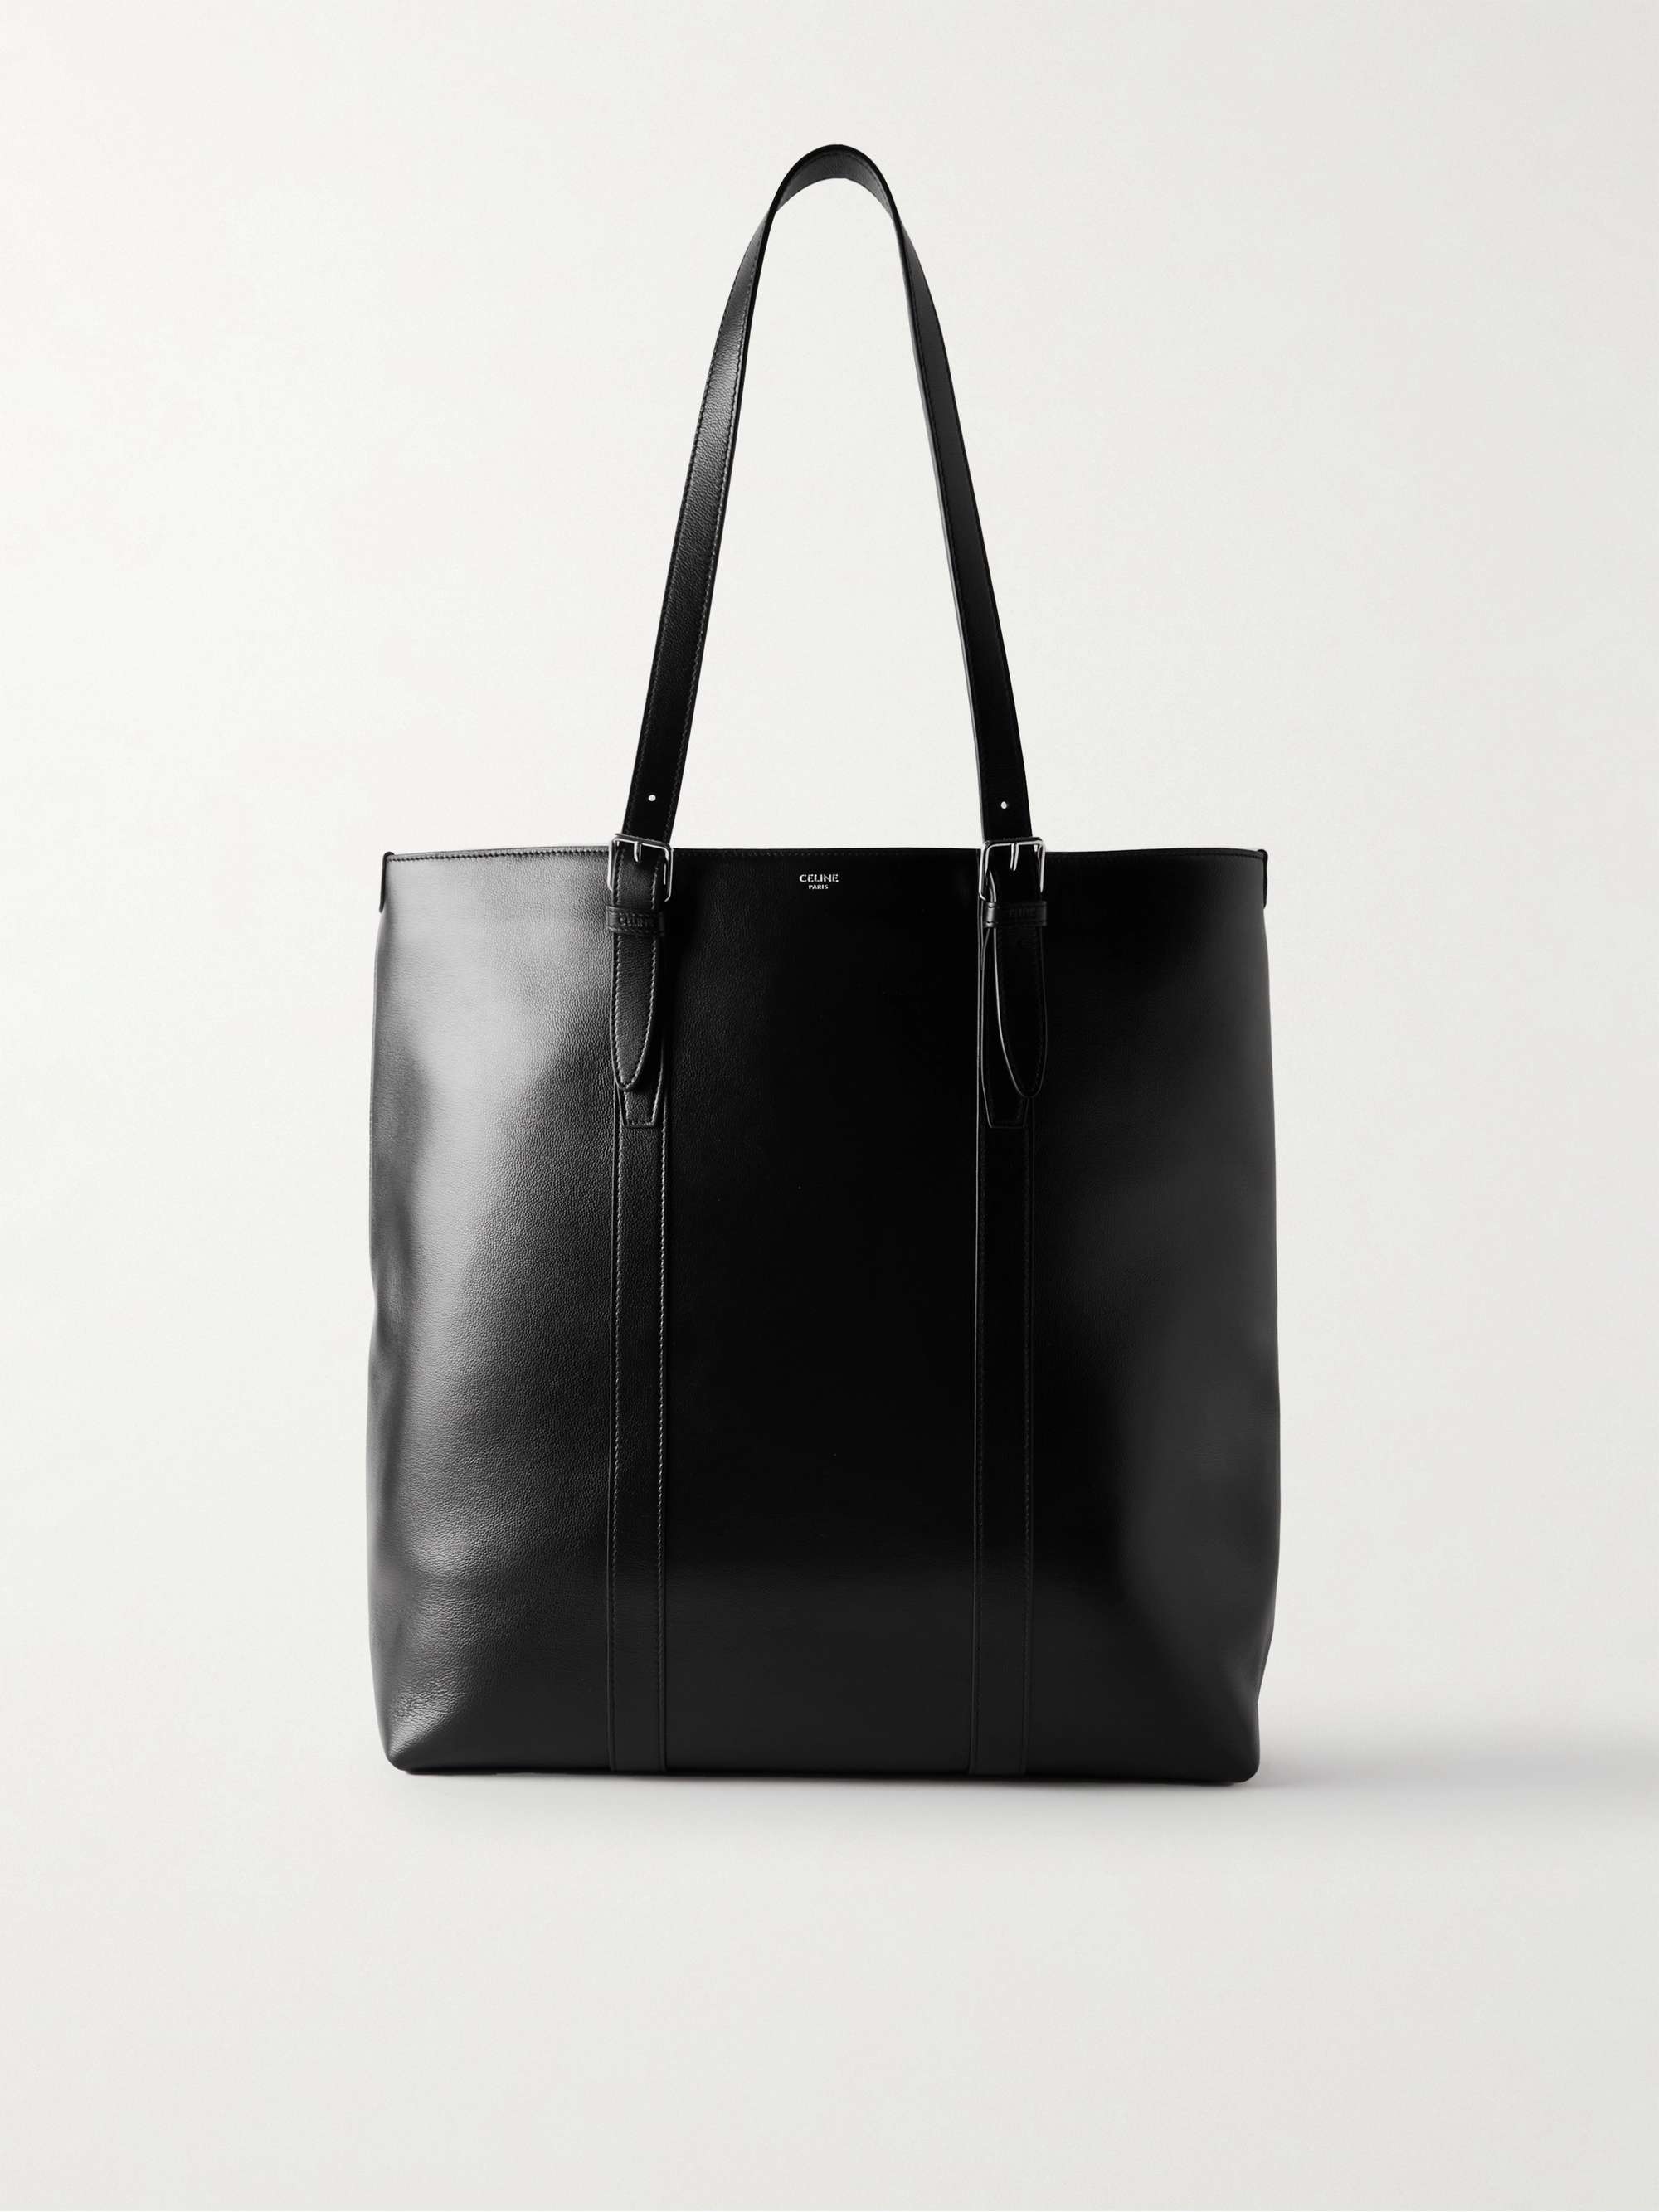 Black Full Grain Leather Big Shopper Bag Retro Tote Purse